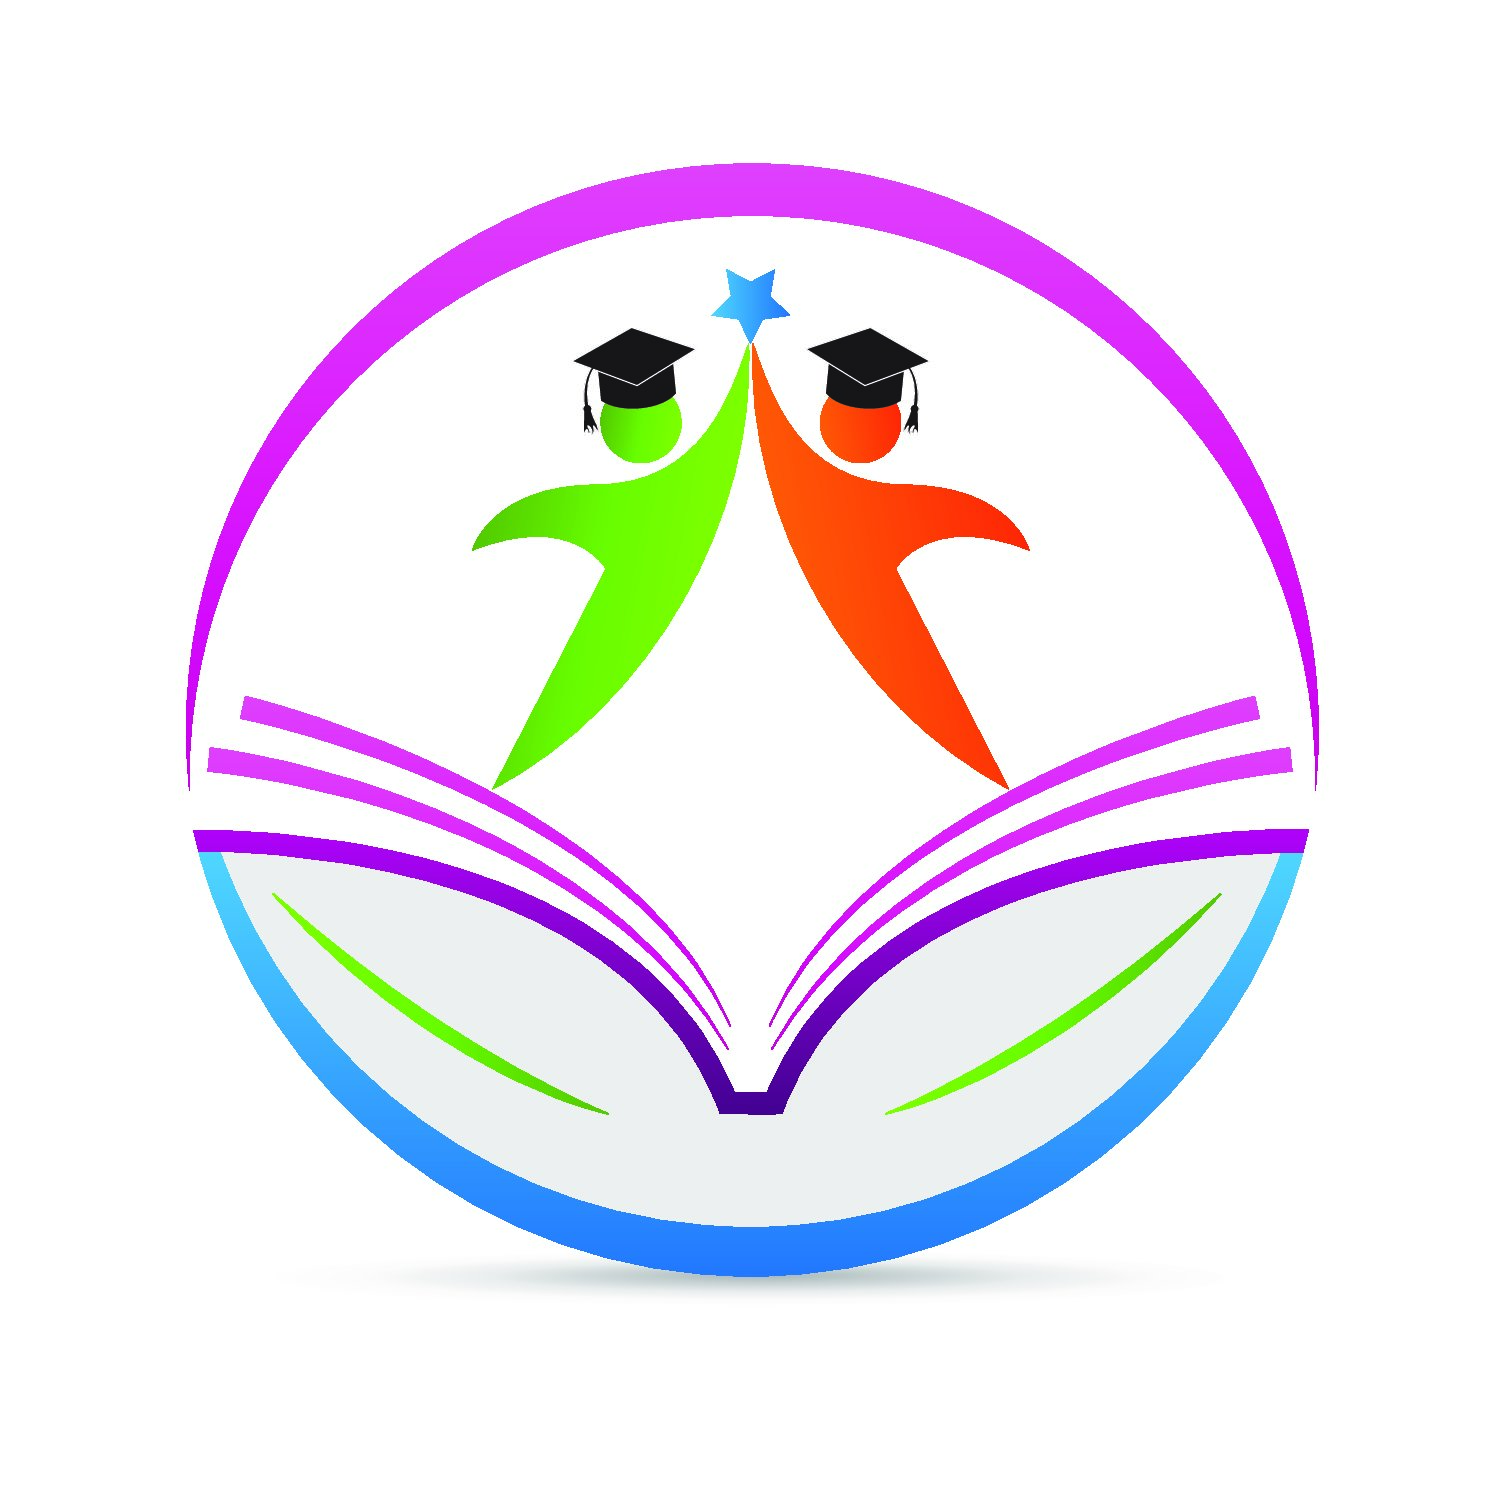 25 Unique Education Logo Design